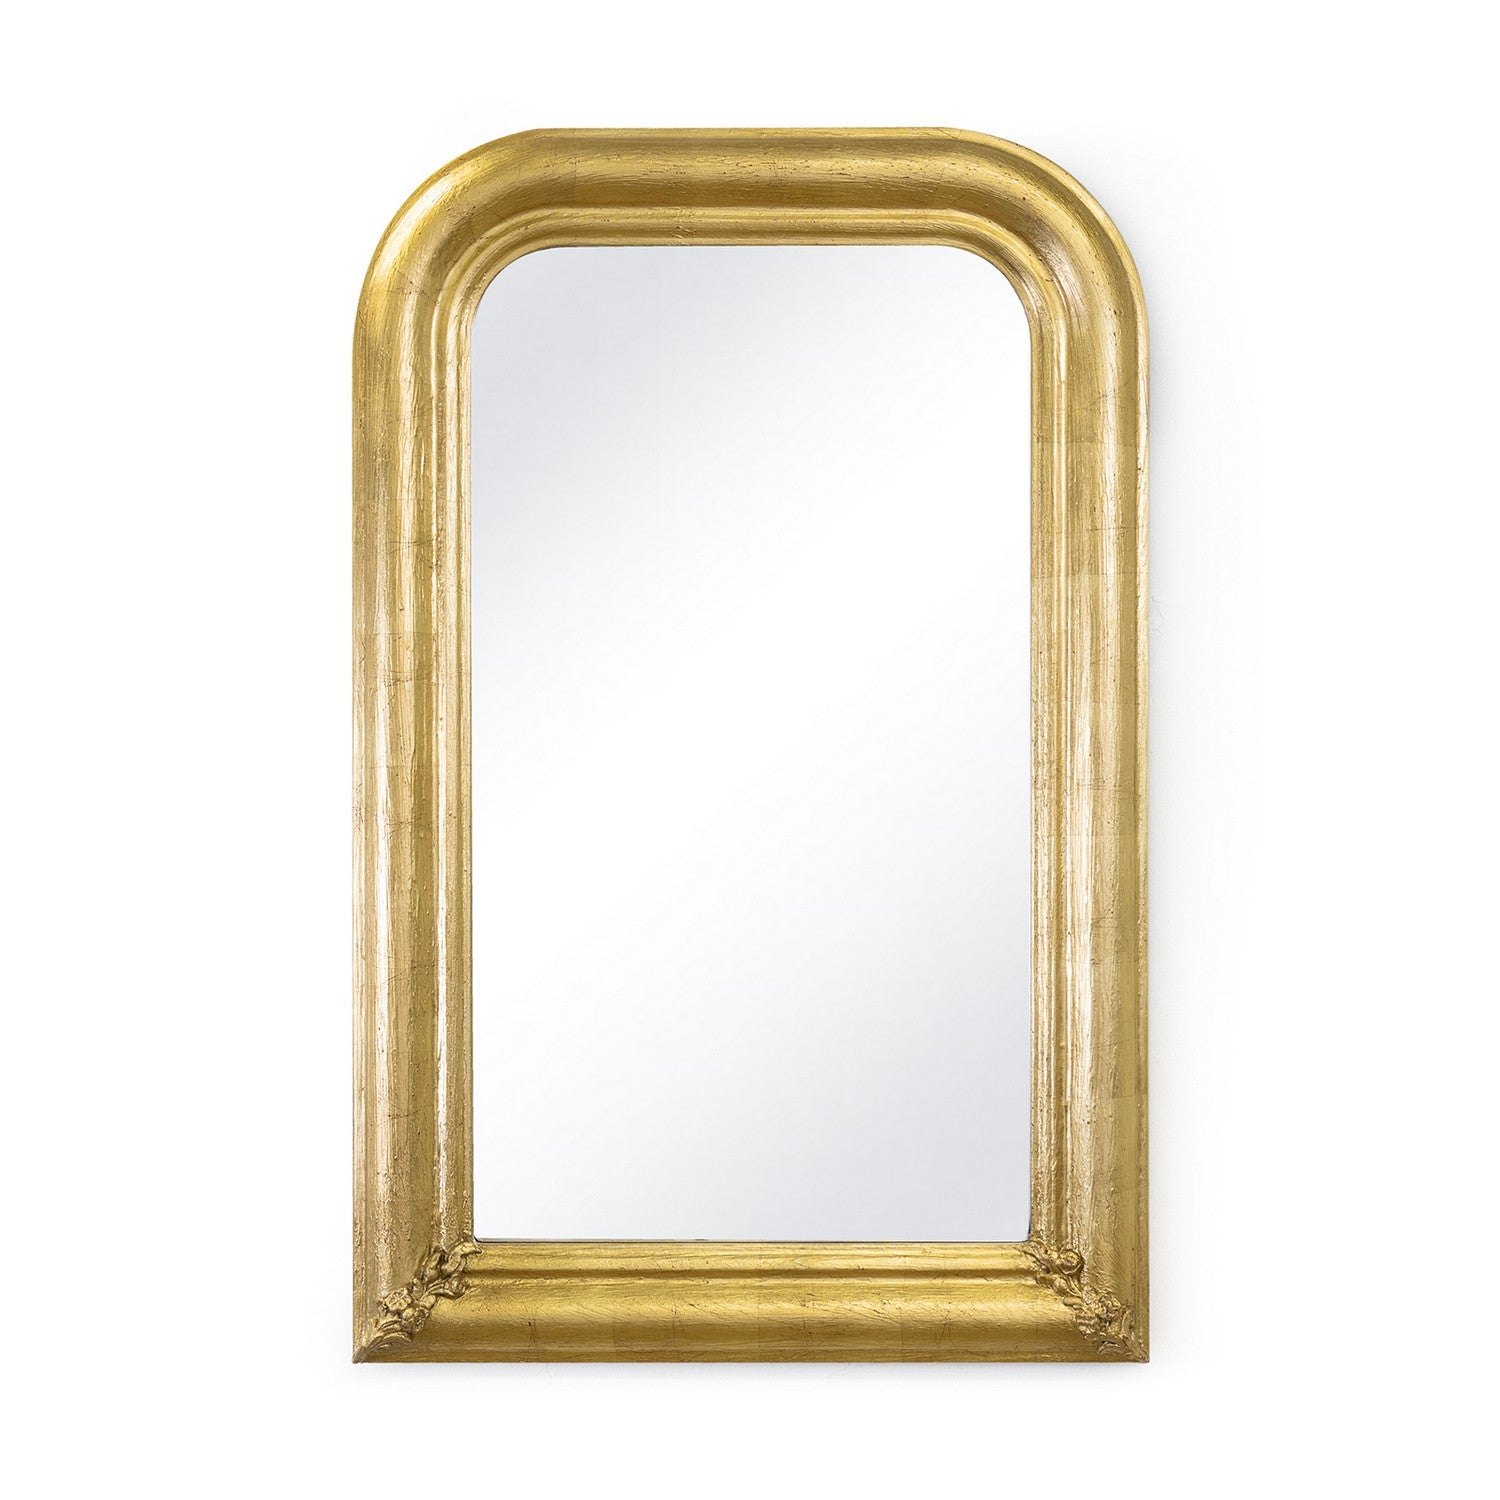 Regina Andrew - 21-1157 - Mirror - Sasha - Gold Leaf